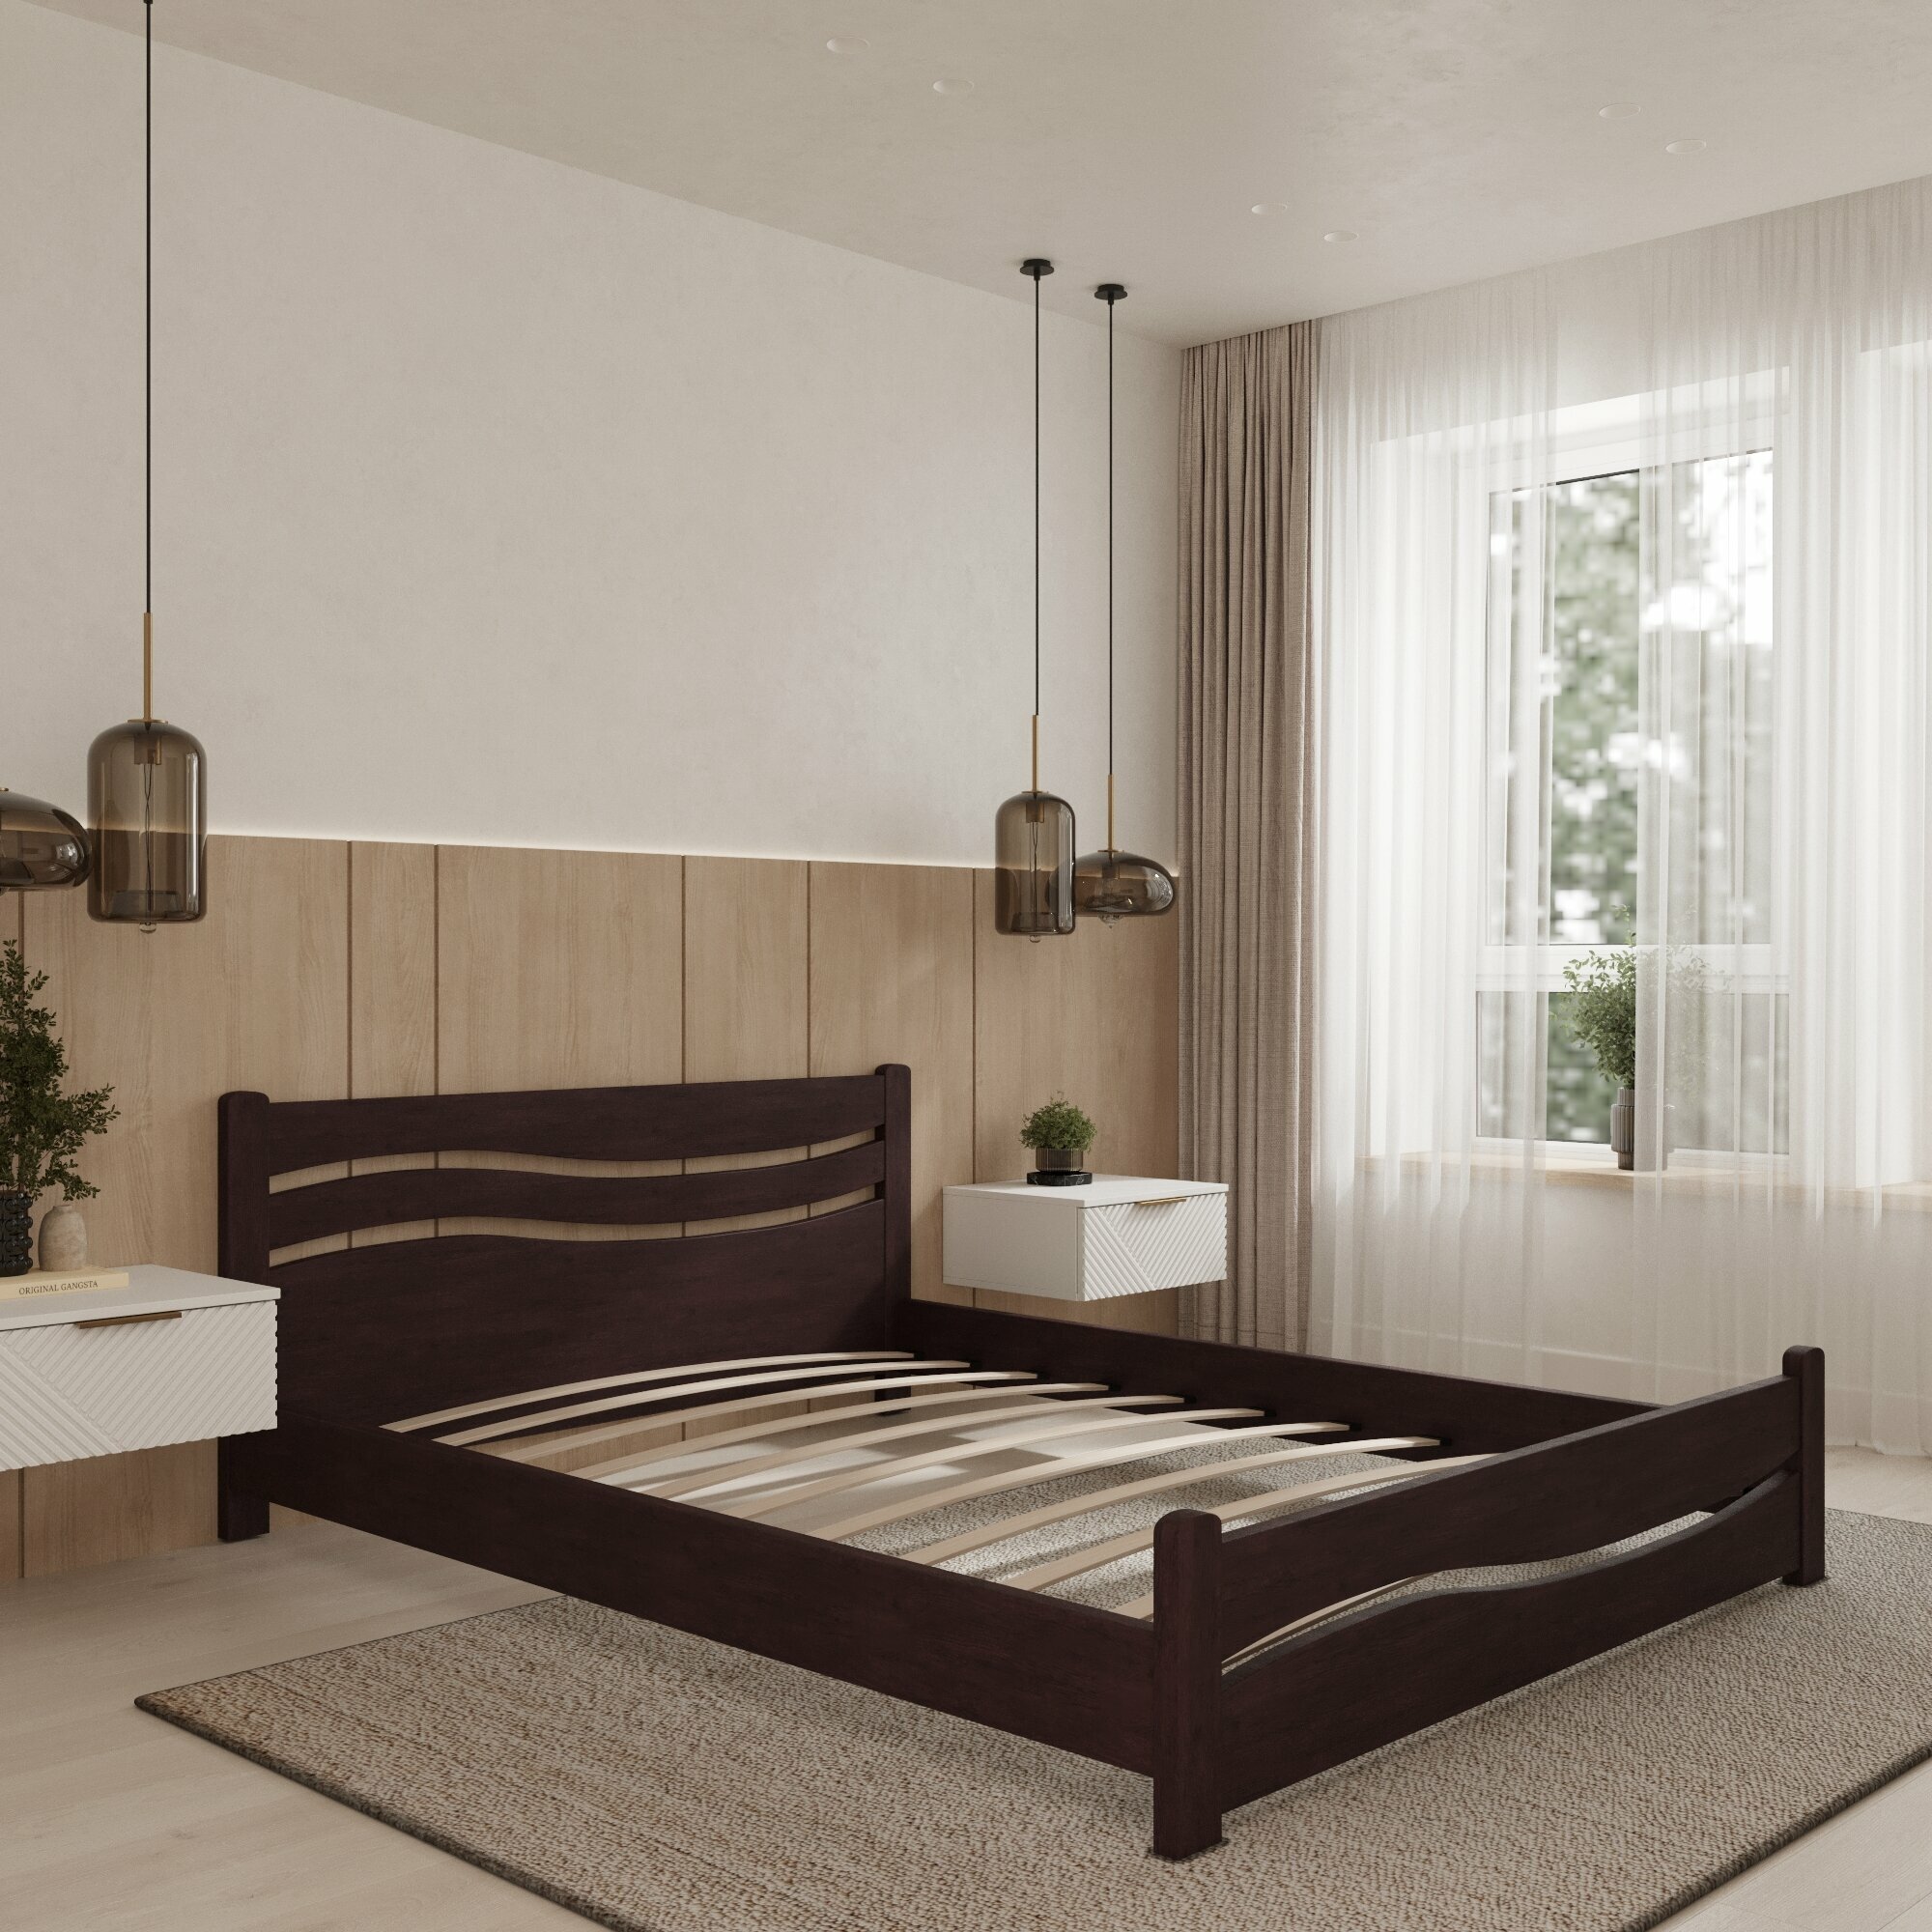 Двуспальная кровать Кровать деревянная Волна 120*200, 120х200 см, ММК-Древ Бук